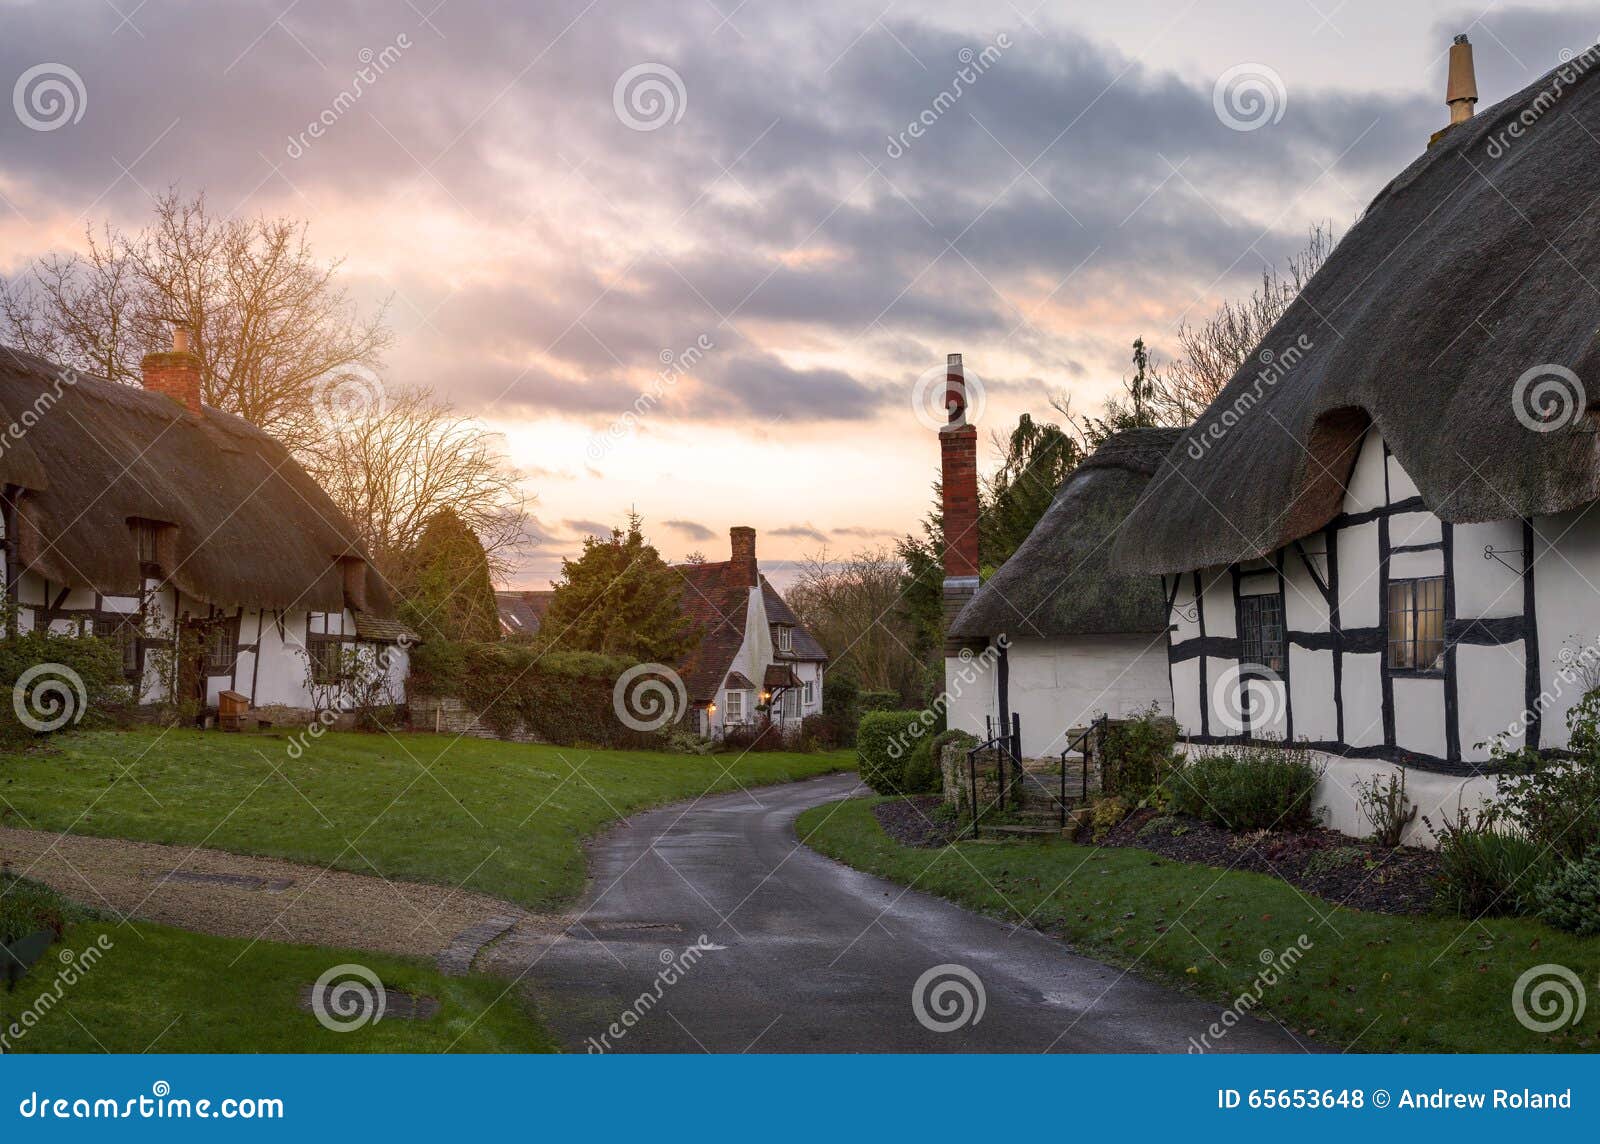 warwickshire village, england